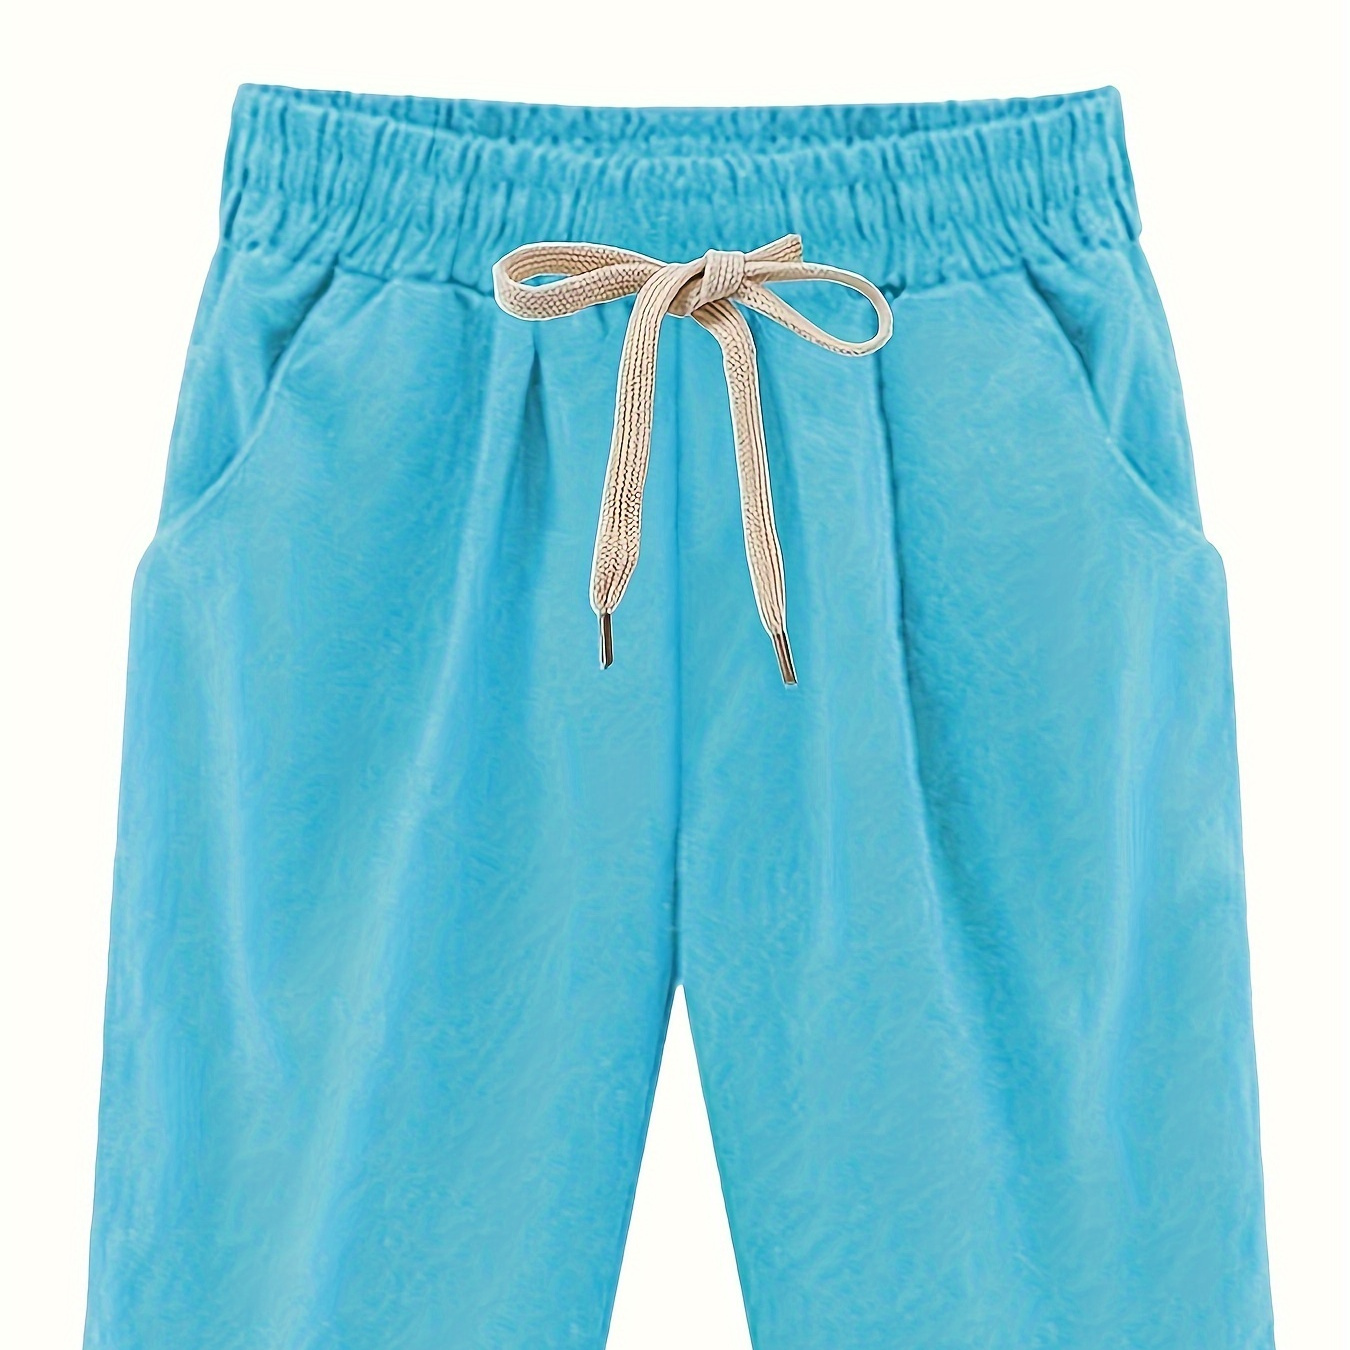 

Solid Elastic Drawstring Pockets Shorts, Summer Loose Casual Comfy Shorts, Women's Clothing